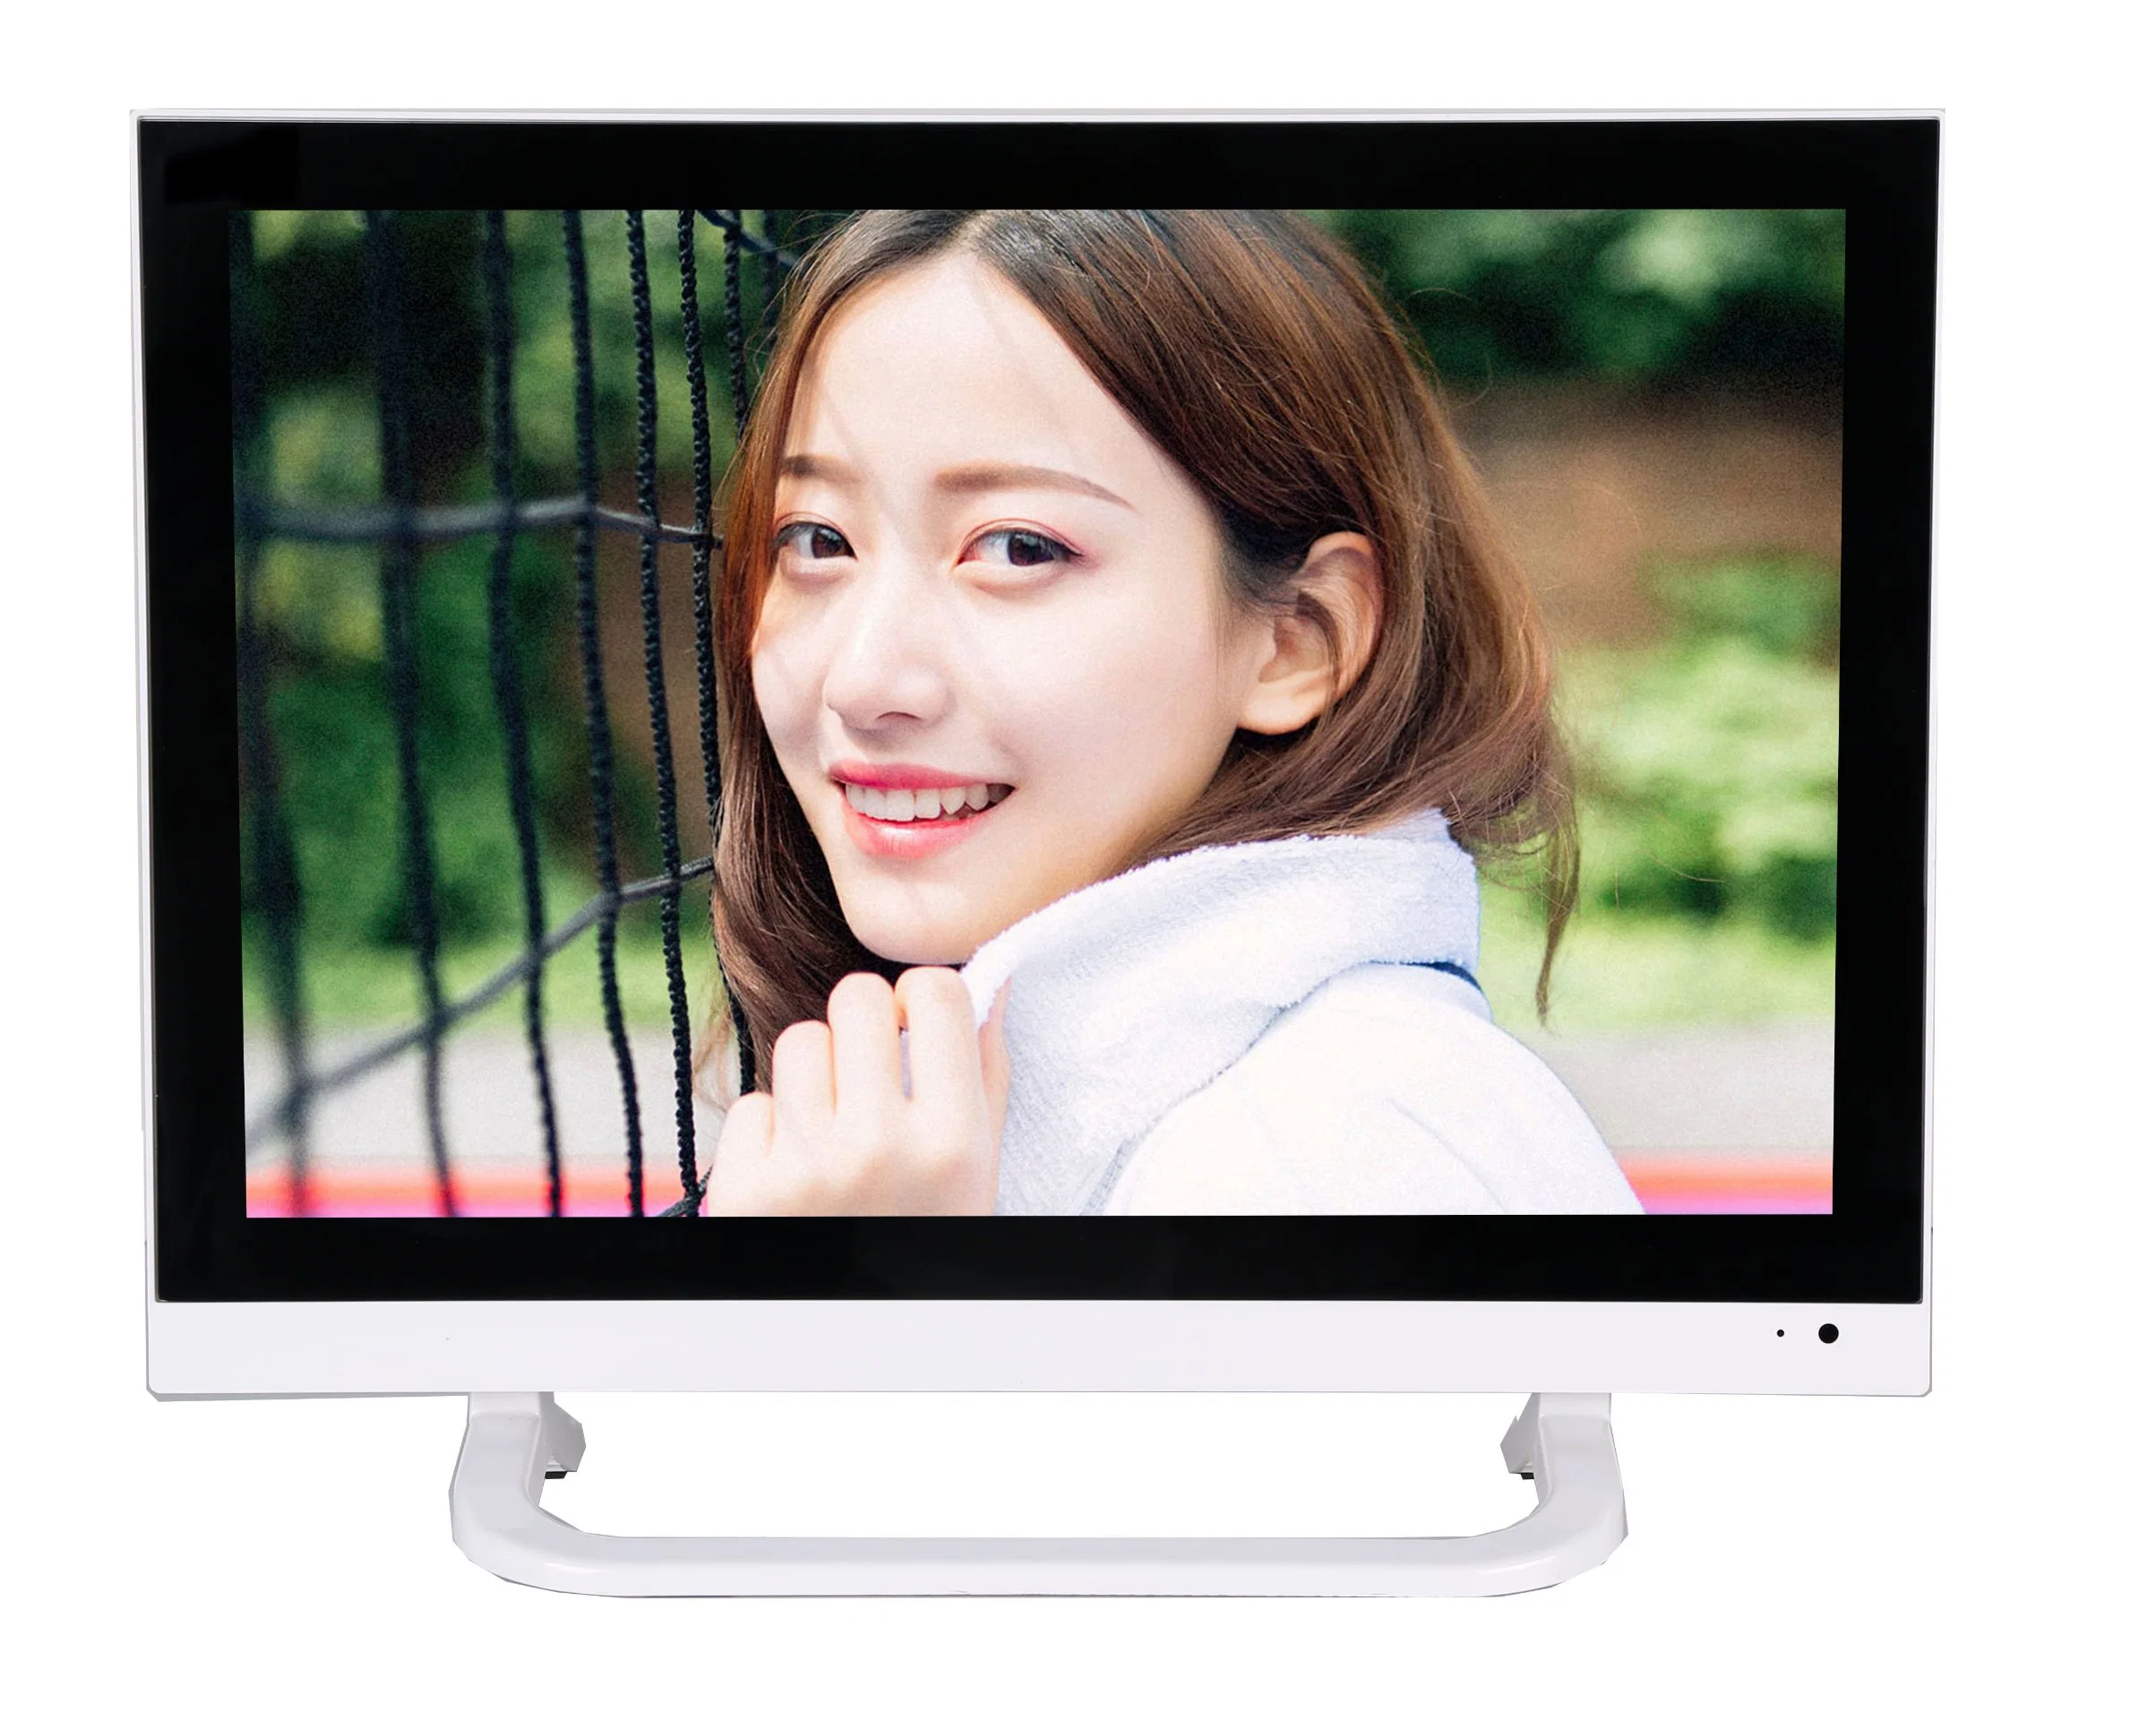 Geöffneter Spant 32 40 42 50 55 Zoll LCD-Fernsehapparat-intelligenter Fernsehapparat